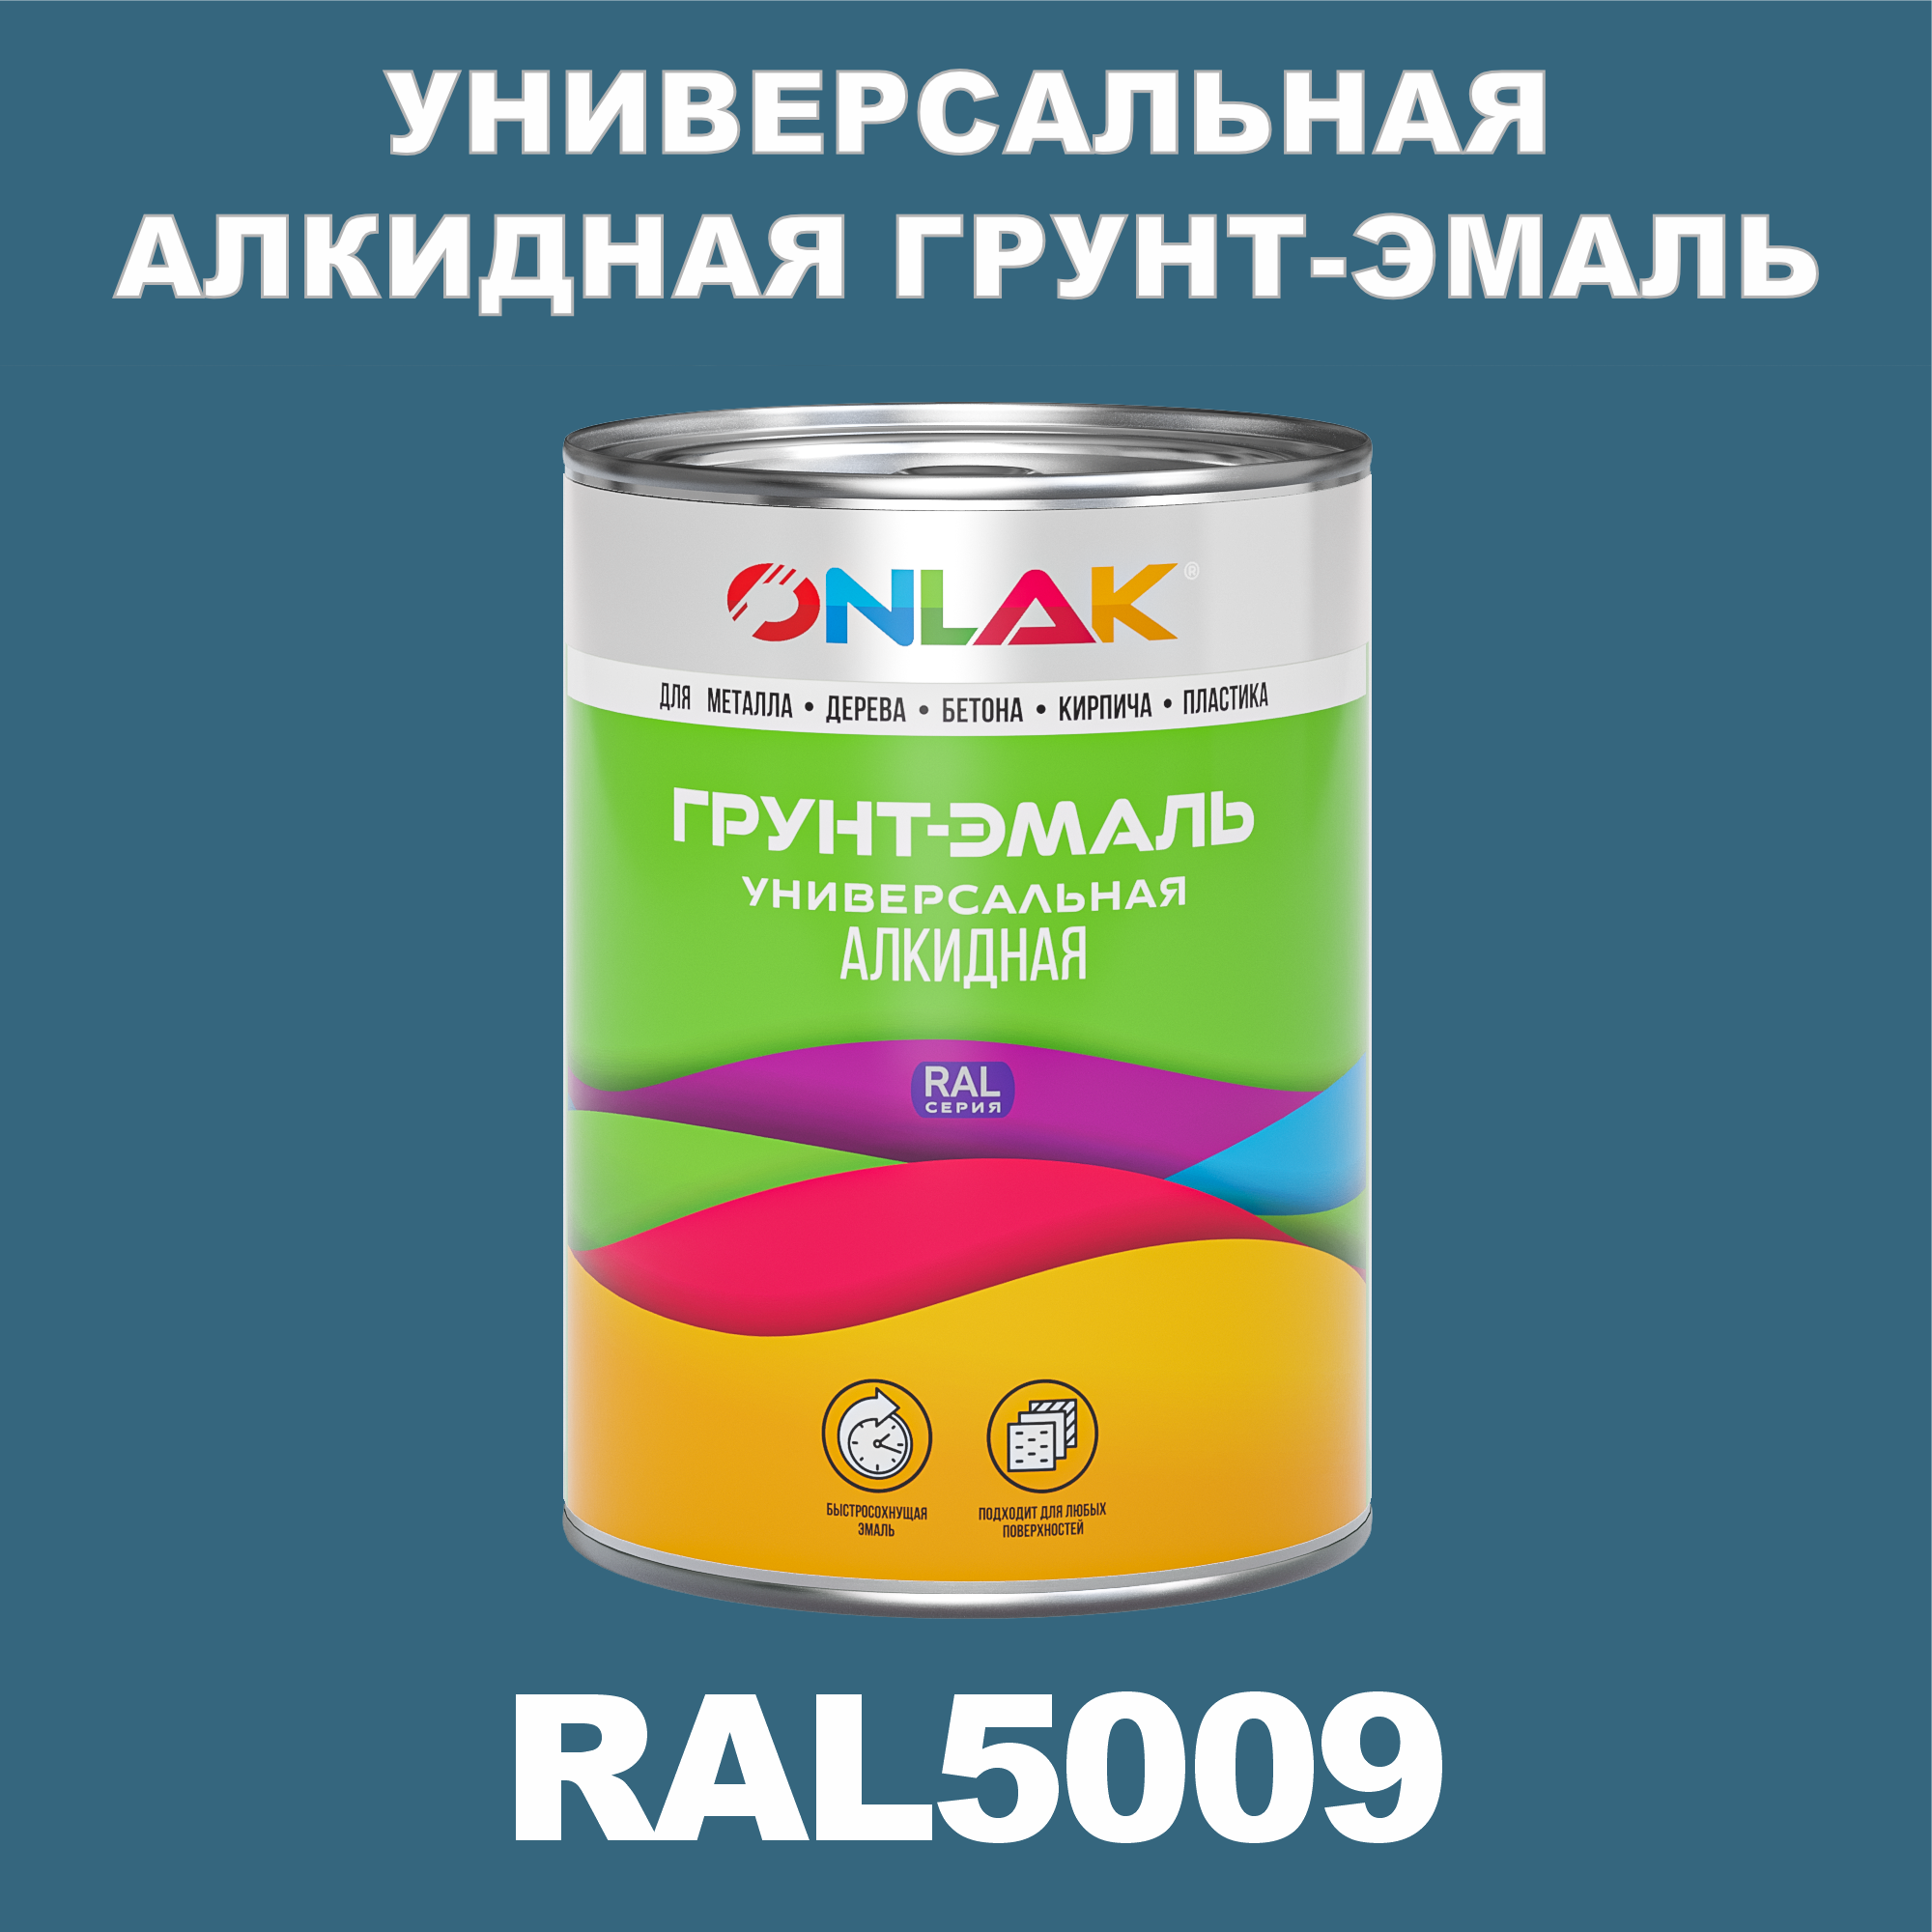 Грунт-эмаль ONLAK 1К RAL5009 антикоррозионная алкидная по металлу по ржавчине 1 кг грунт эмаль аэрозольная престиж 3в1 алкидная коричневая ral 8017 425 мл 0 425 кг